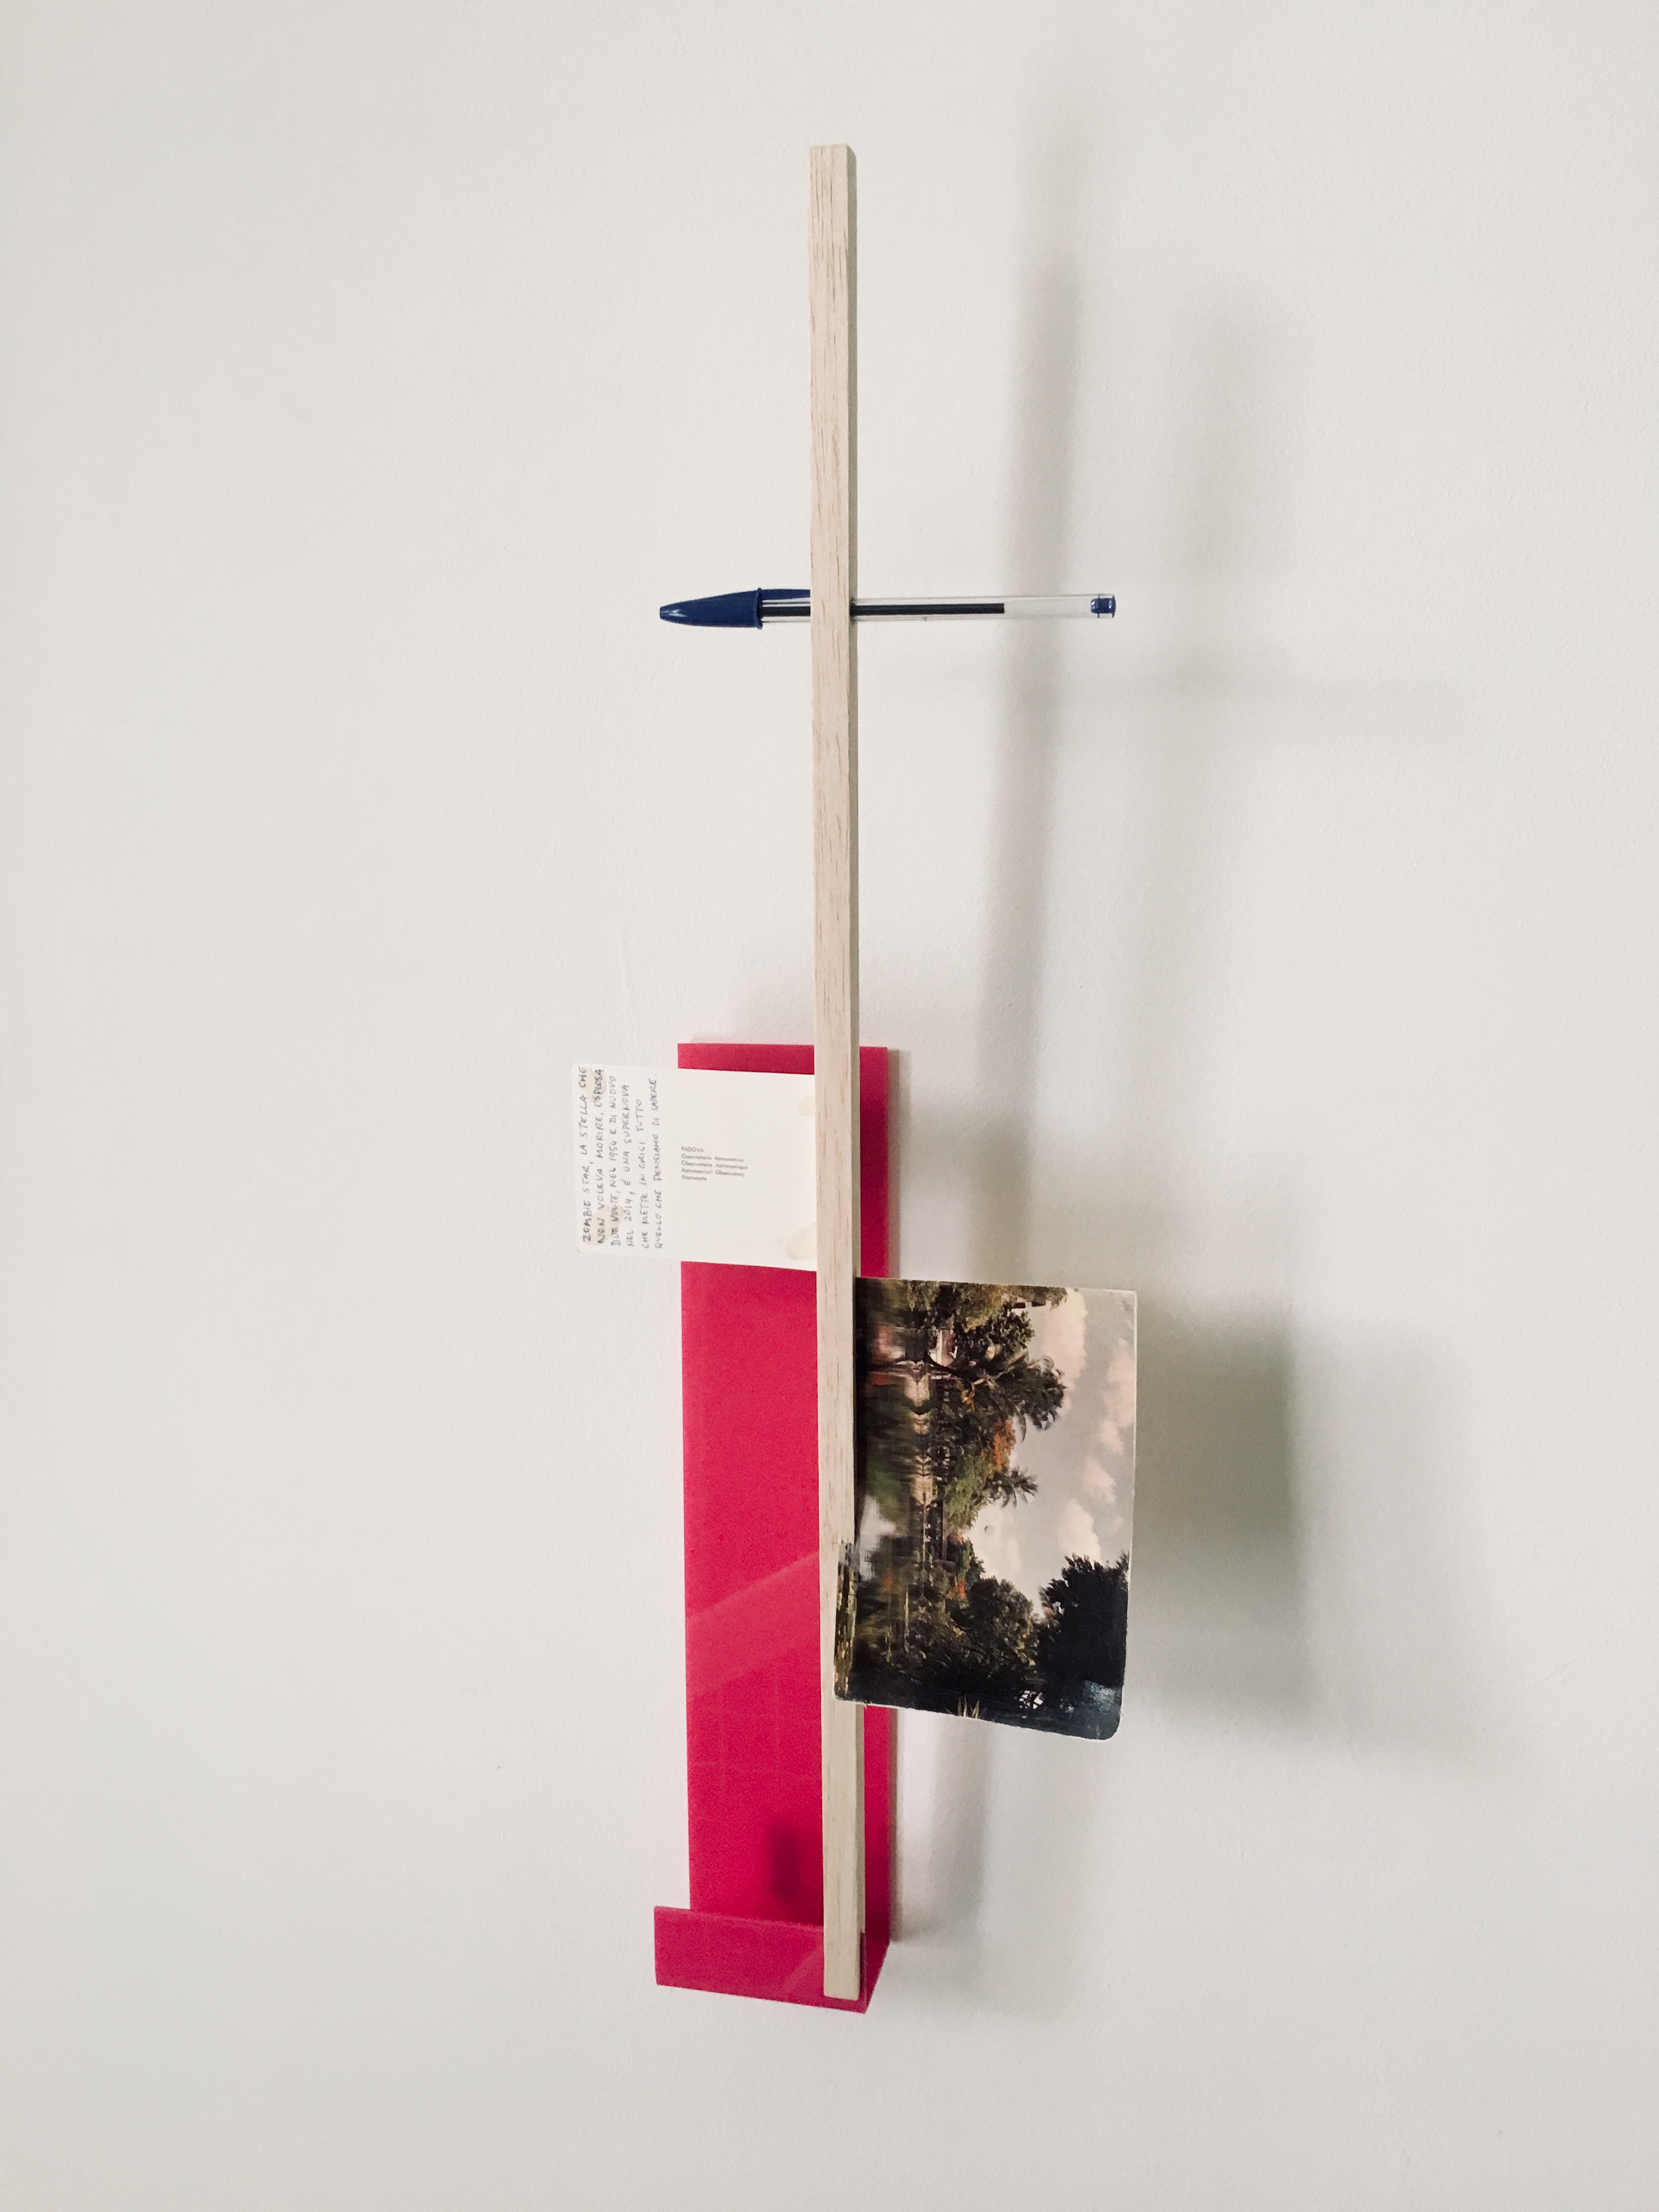 Gê Orthof, Máquinas mínimas, Padova Ho Chi Minh, acrílico, postais, balsa e bic, desenho assemblage, 63 x 21 x 6 cm, 2018